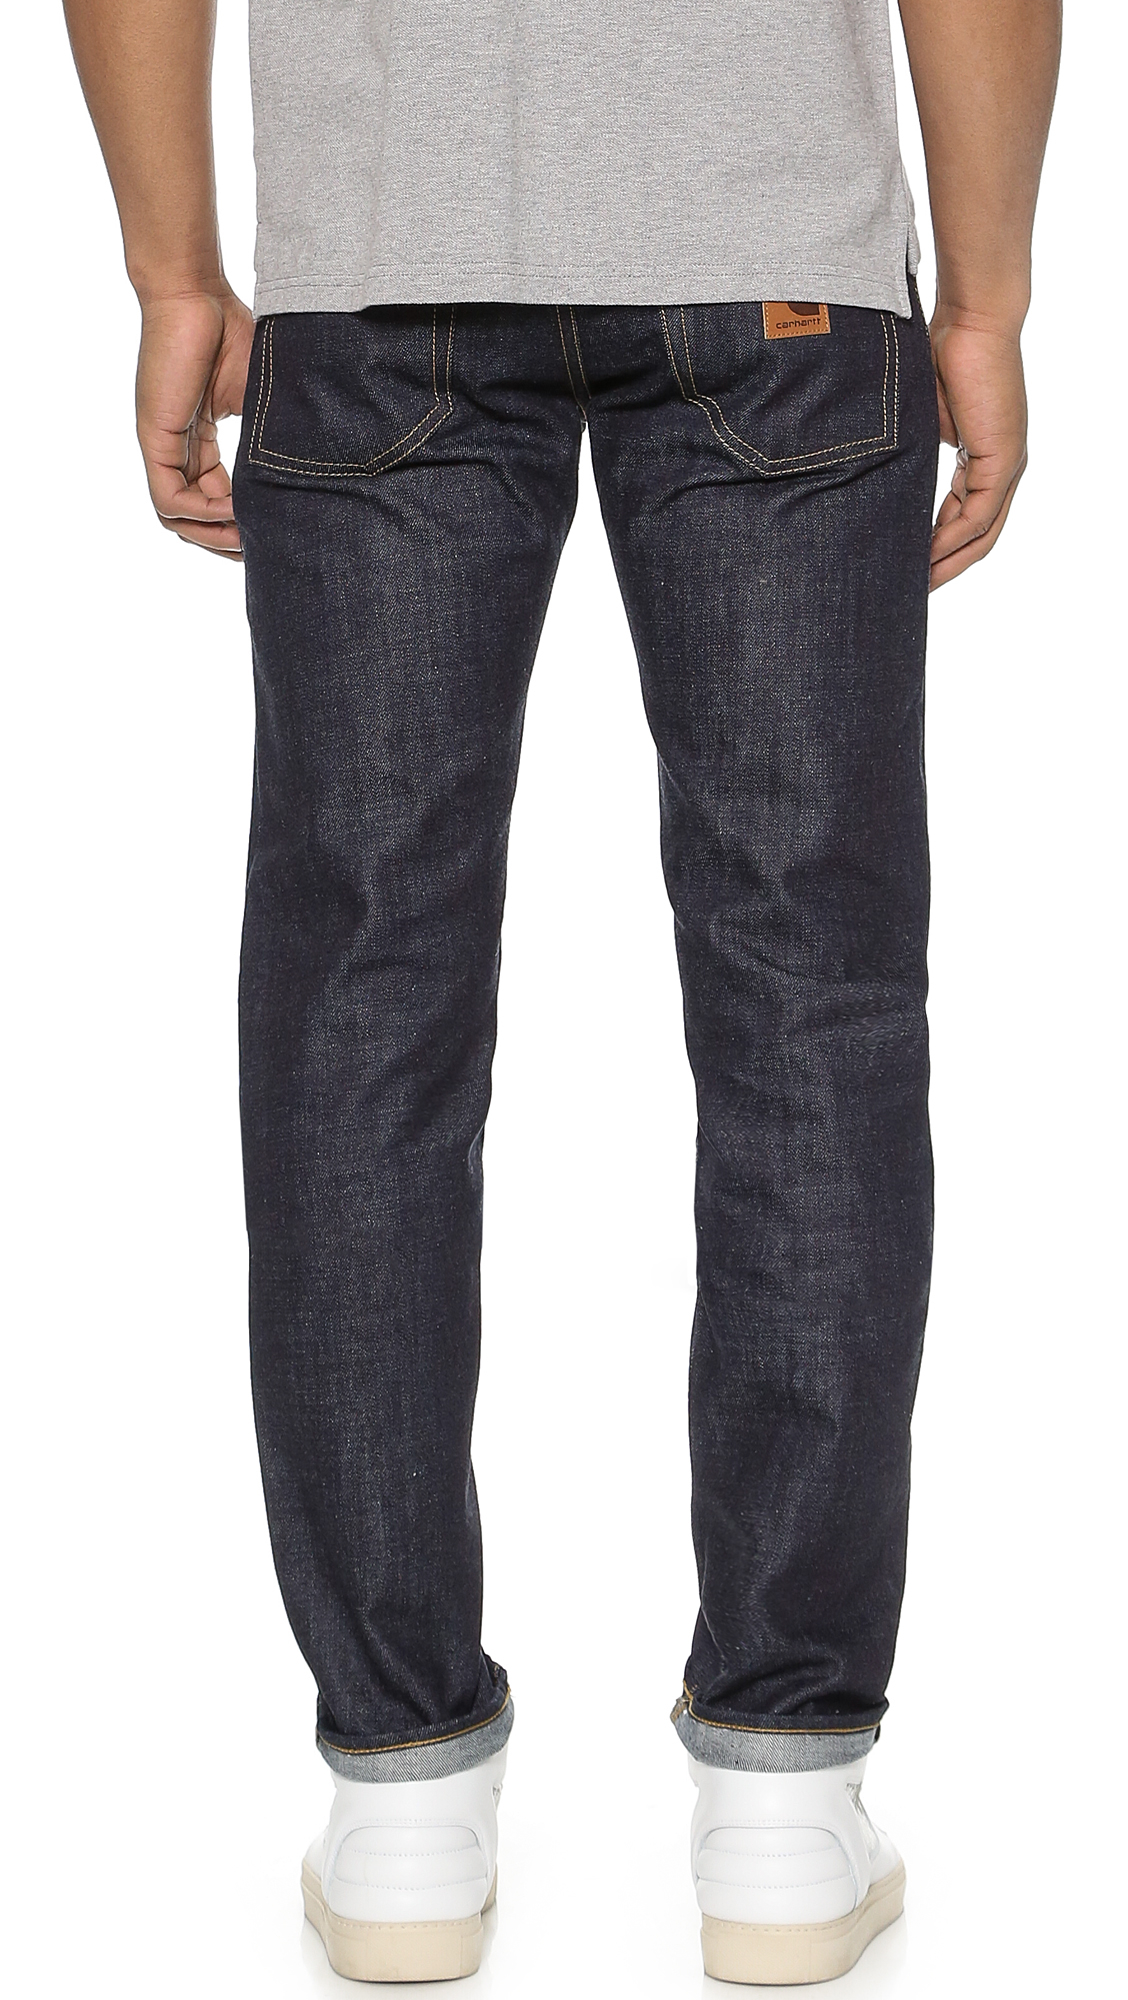 Lyst - Carhartt WIP Klondike Ii Jeans in Blue for Men